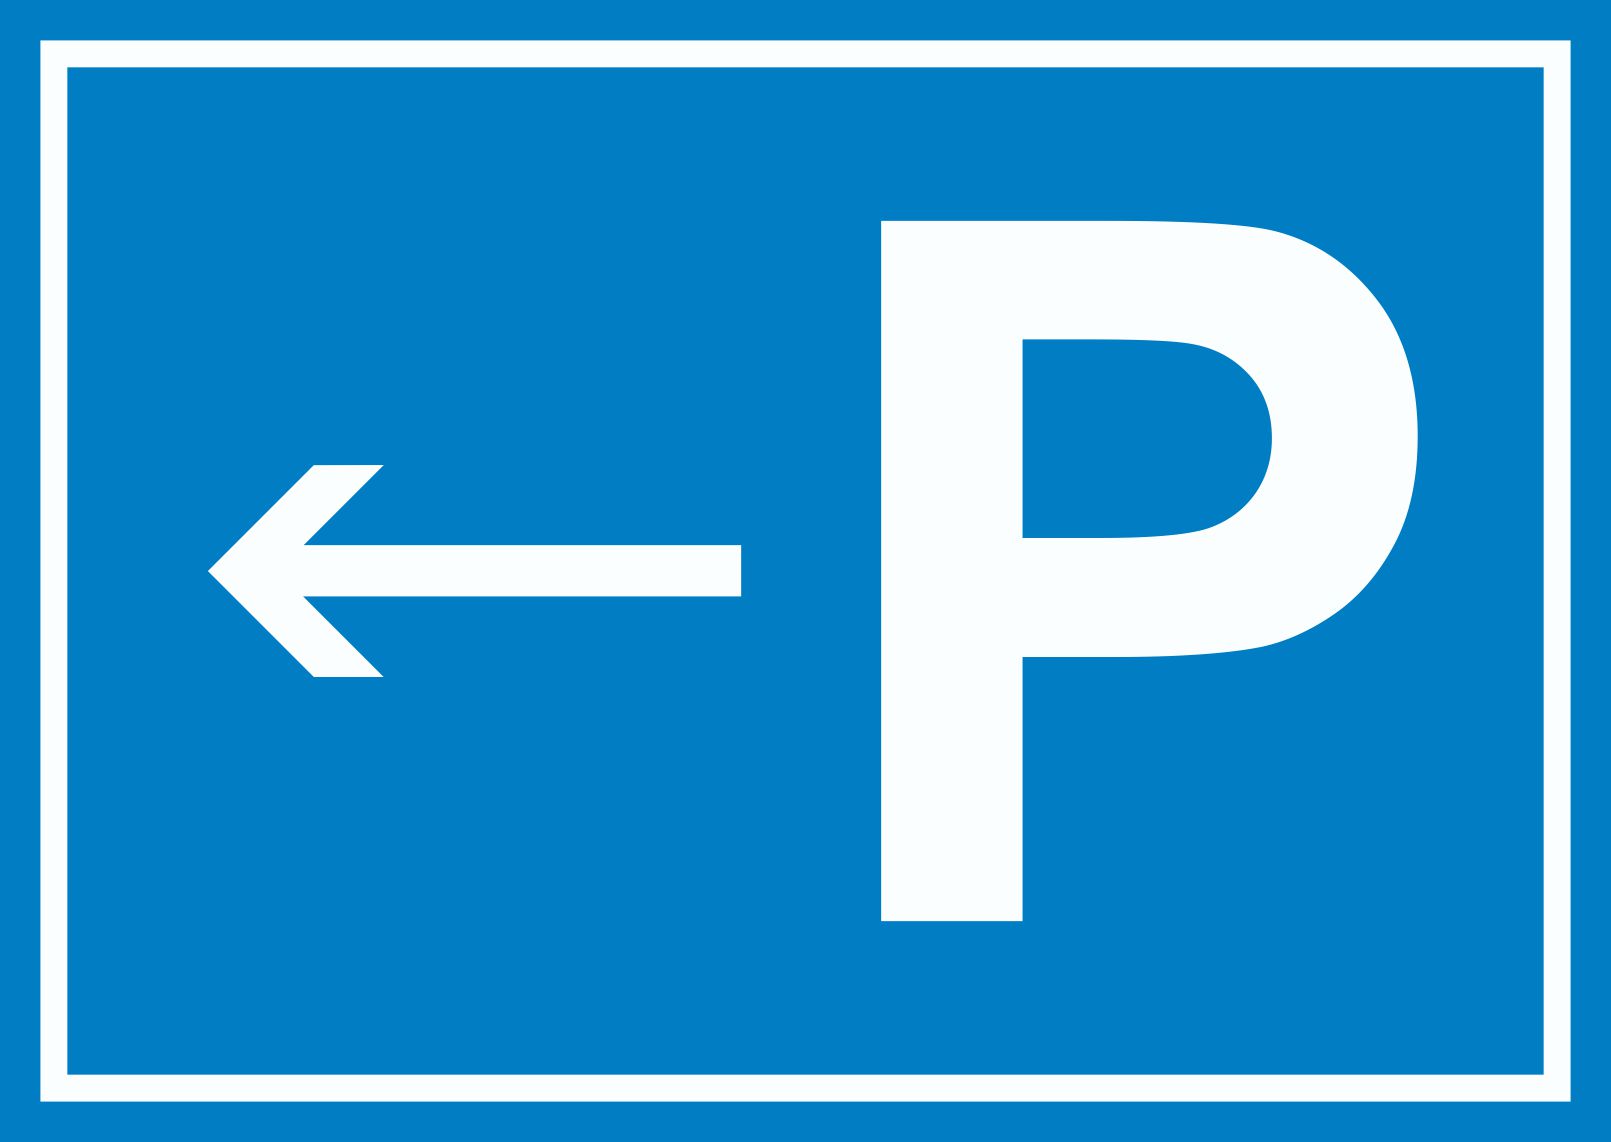 Privat Parkplatz Schild  HB-Druck Schilder, Textildruck